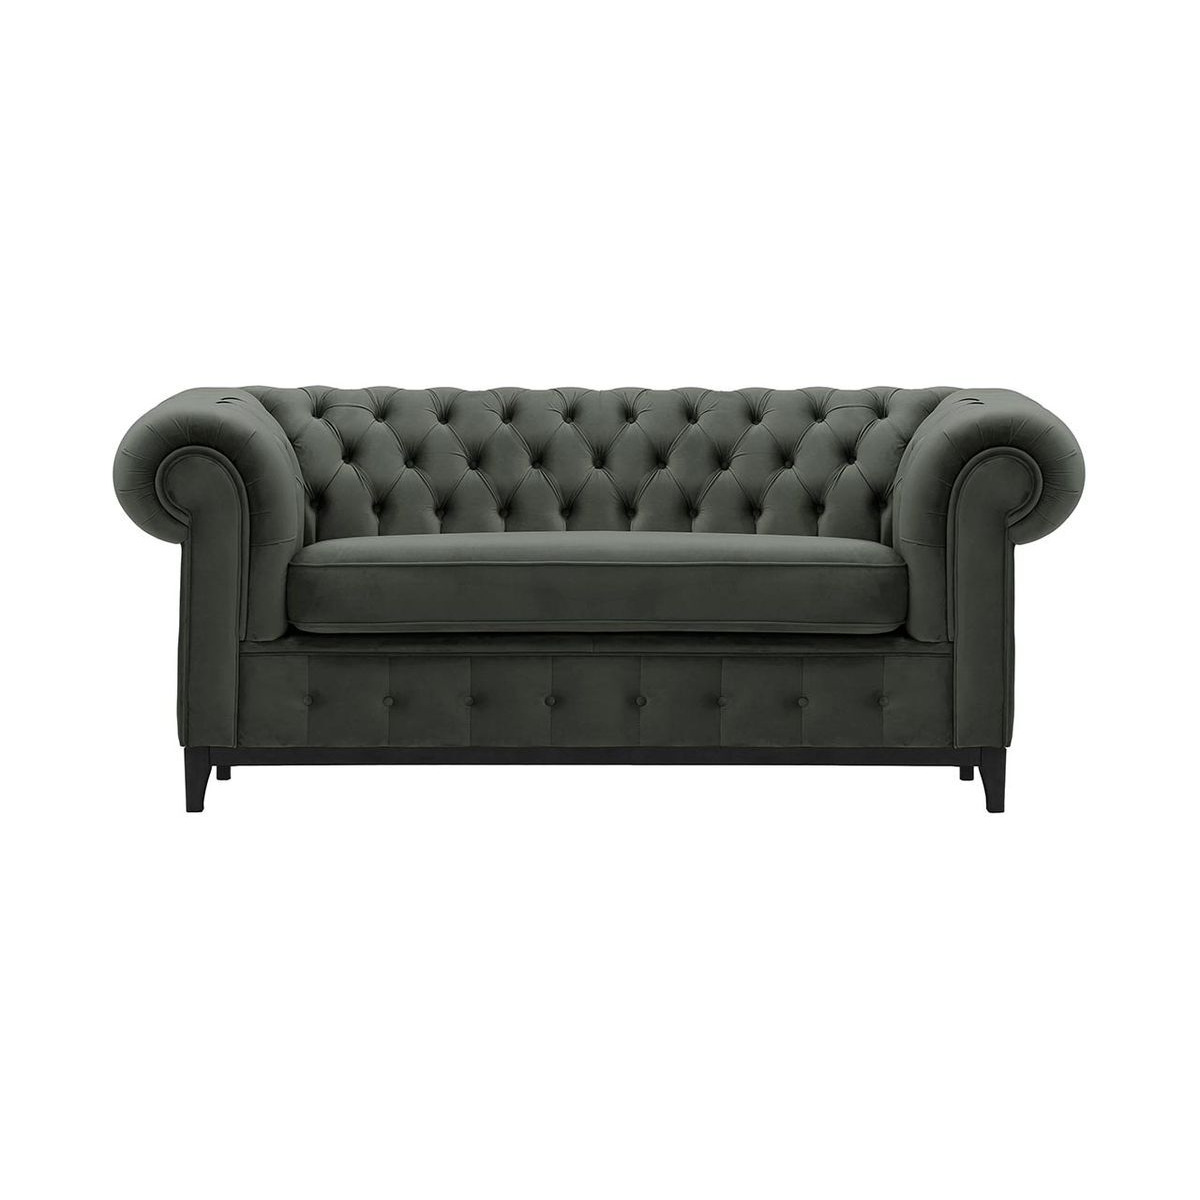 Chesterfield Grand 2 Seater Sofa, graphite, Leg colour: black - image 1